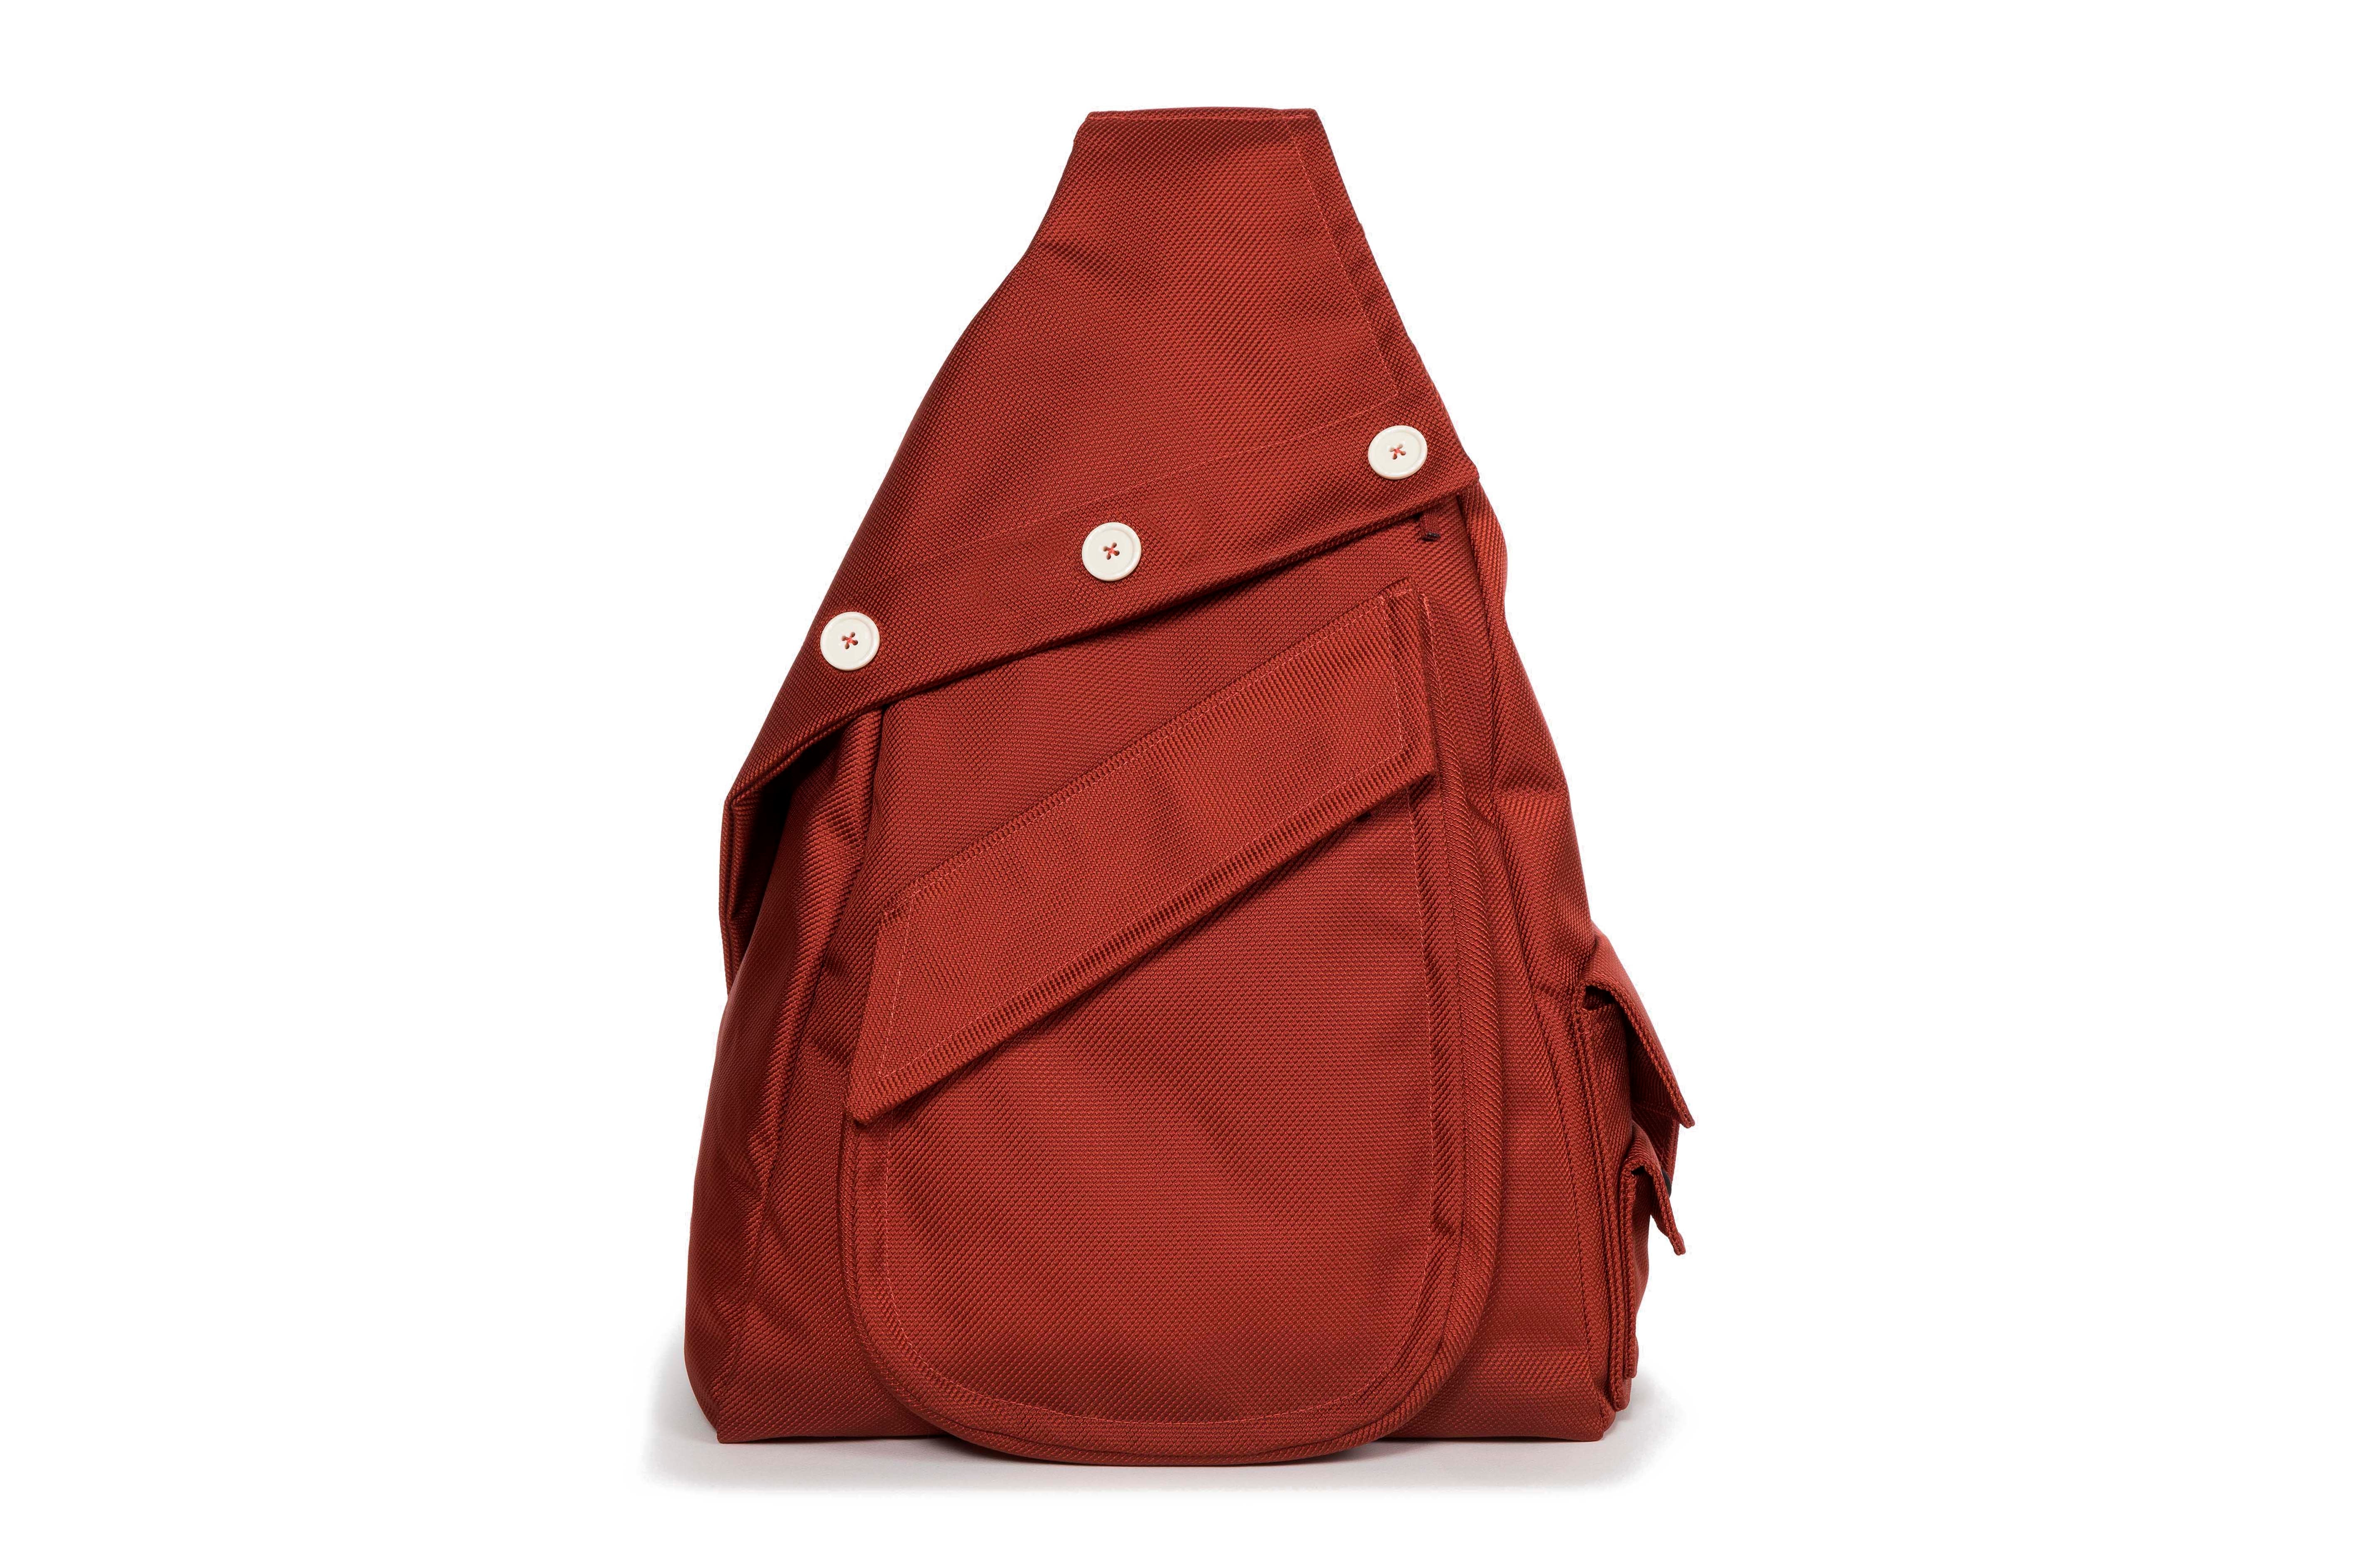 Raf Simons x Eastpak Fall/Winter 18 Collection Backpacks Bag